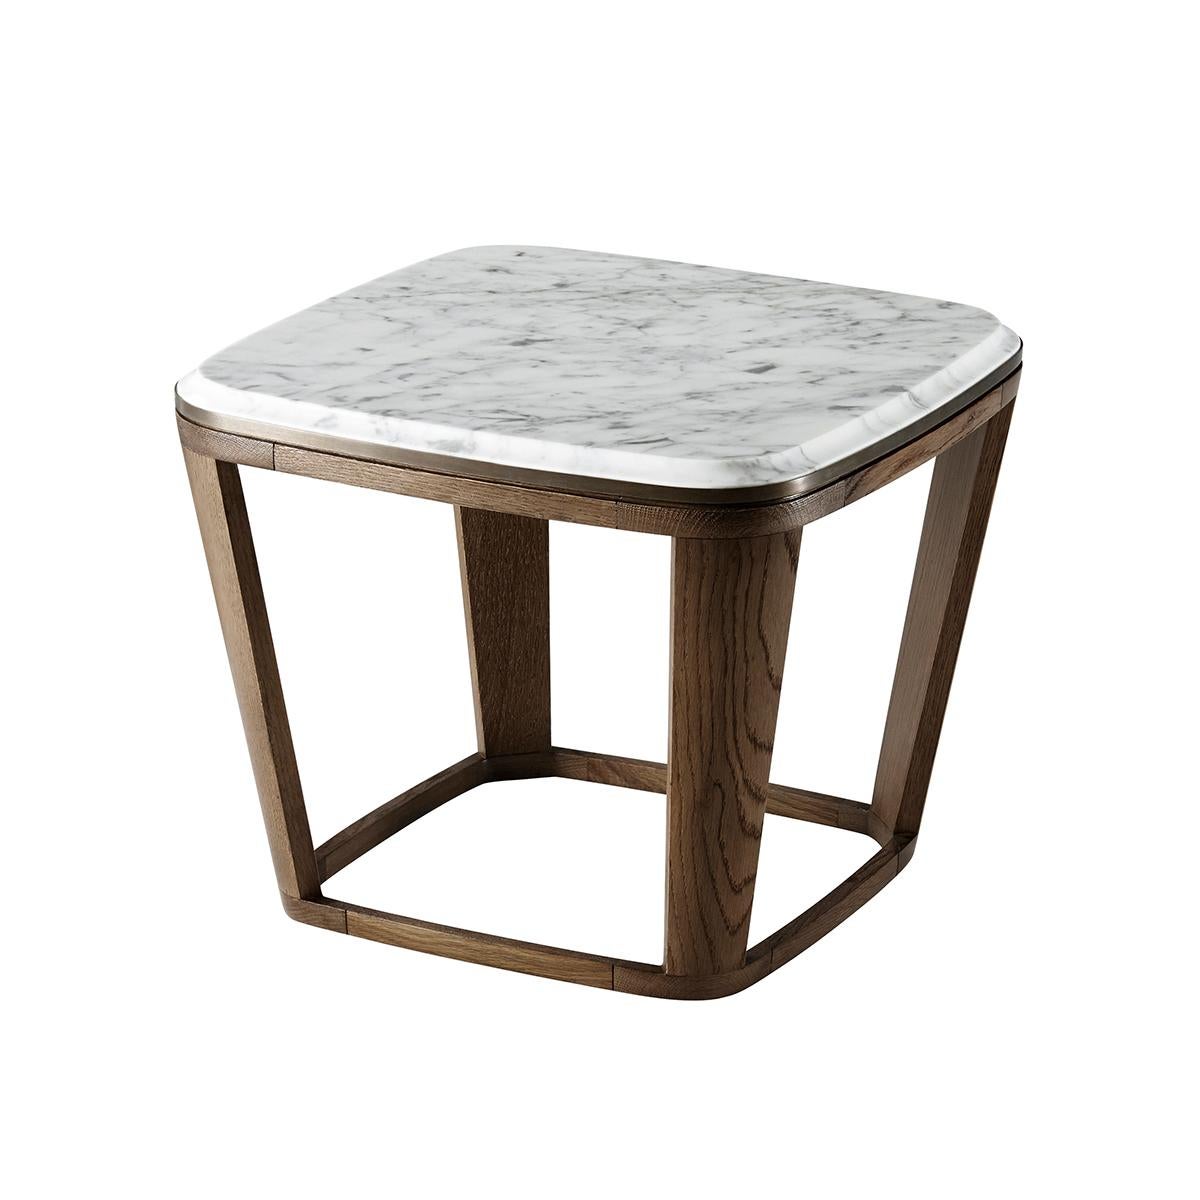 Ein einzigartiger, sich verjüngender, quadratischer Tisch mit Marmorplatte. Mit einer abgeschrägten Kante aus Marmor mit abgerundeten Ecken, mit bronzefarbenen Edelstahlleisten und einem sich verjüngenden Eichenholzsockel.

Abmessungen: 19,75